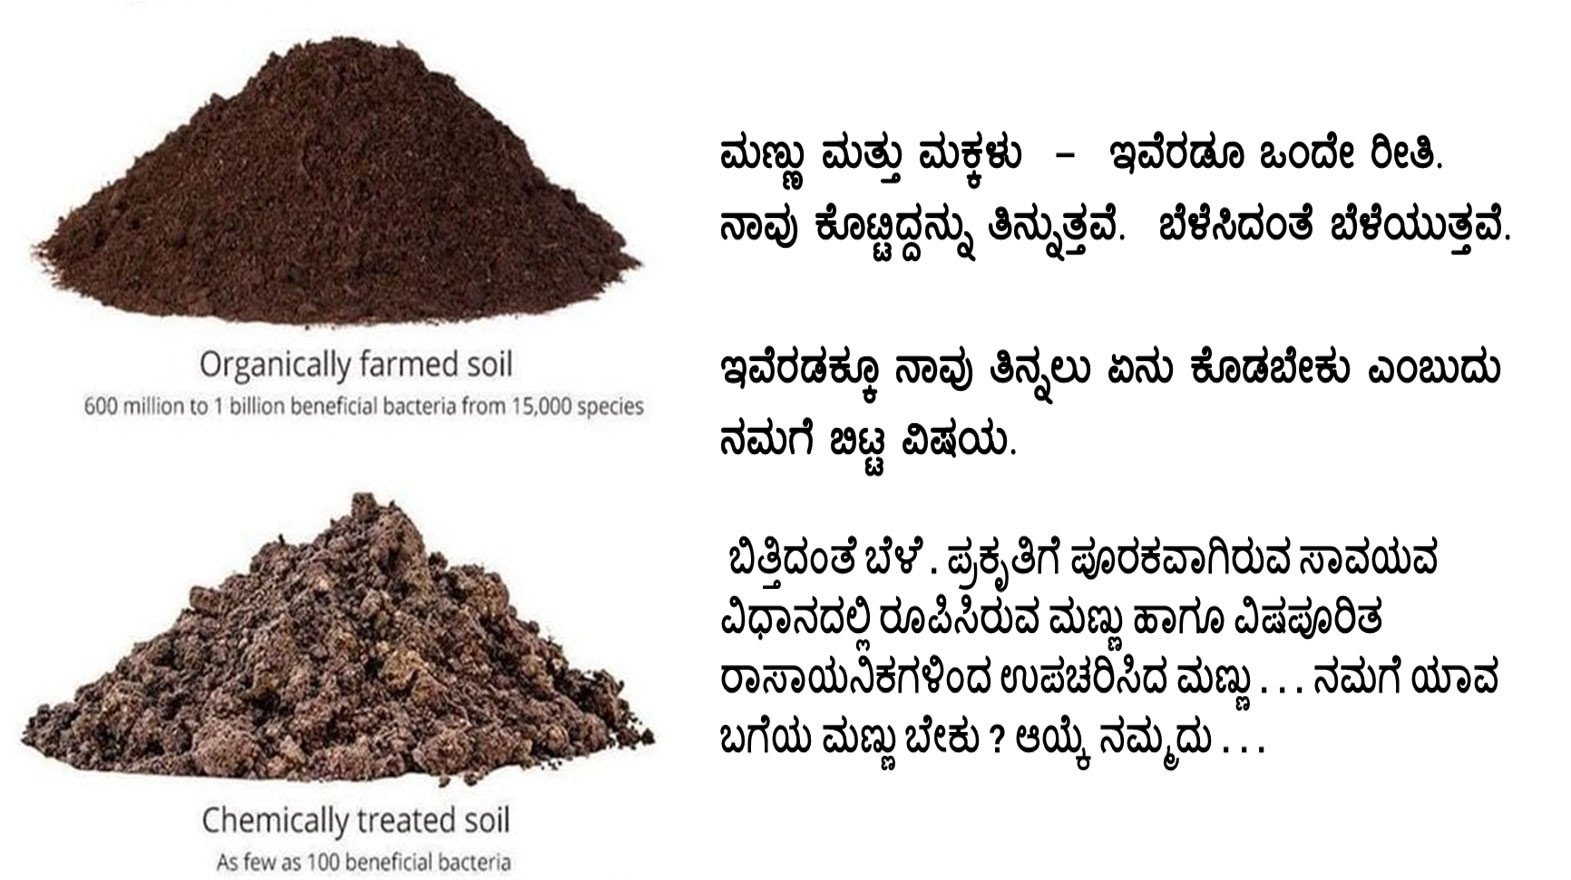 poster on soil biodiversity in Kannada